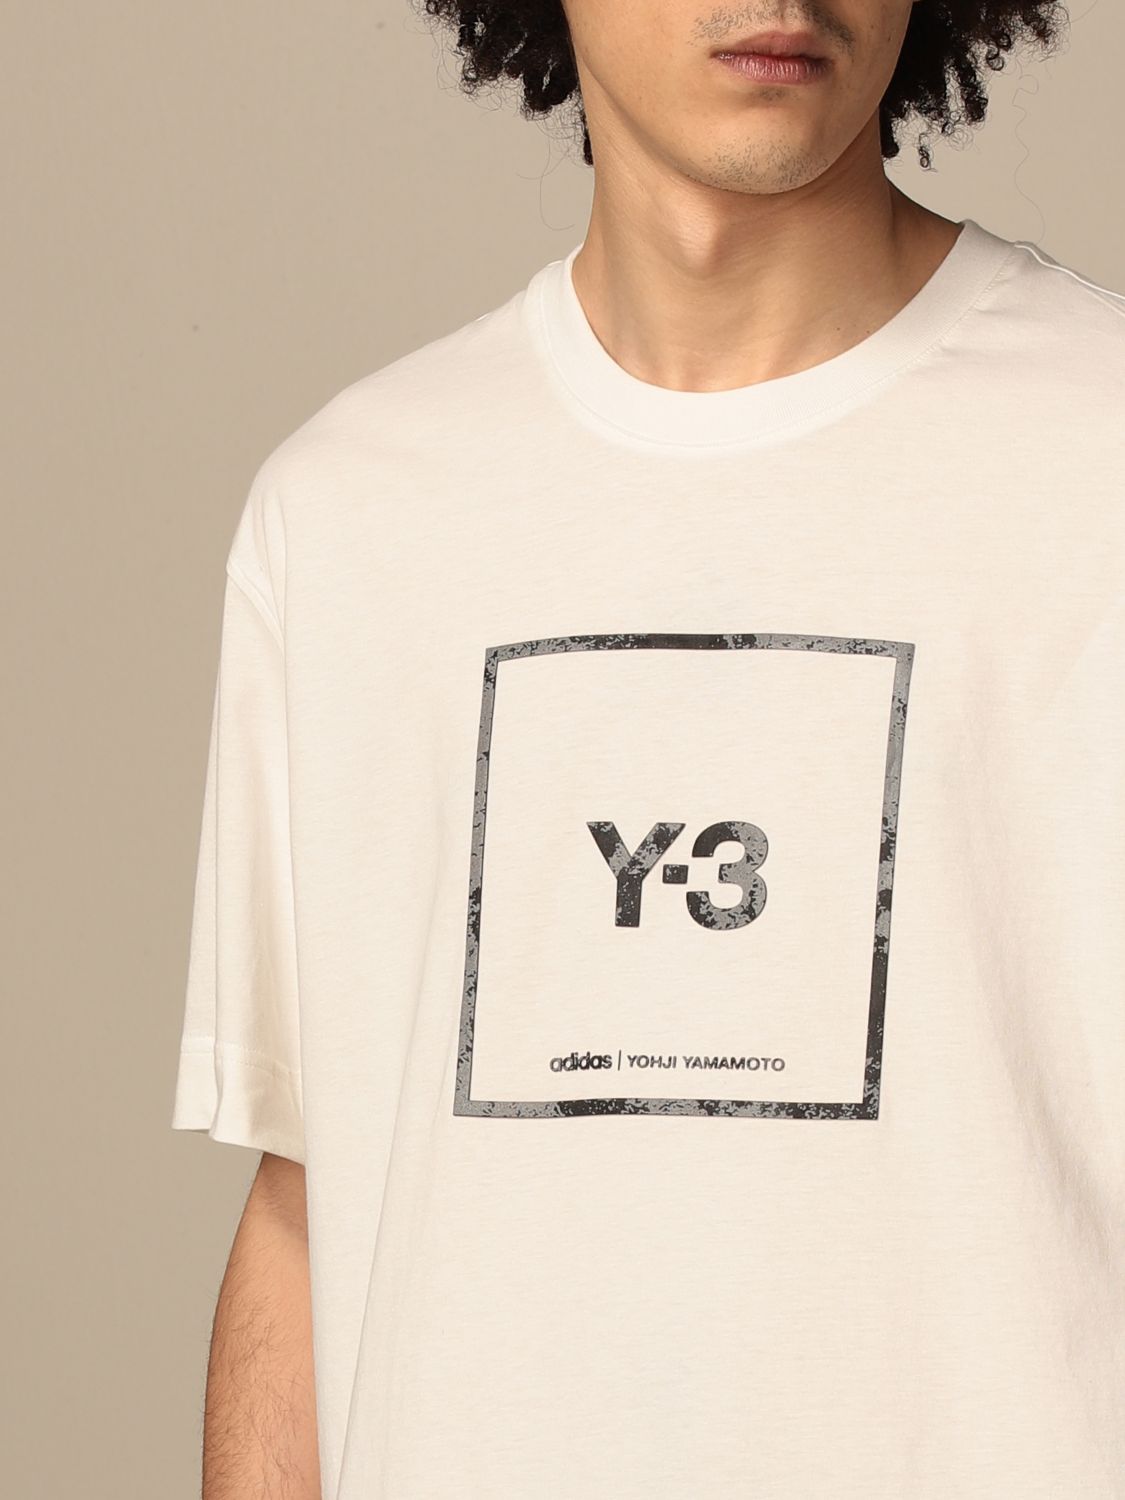 y3 tee shirt